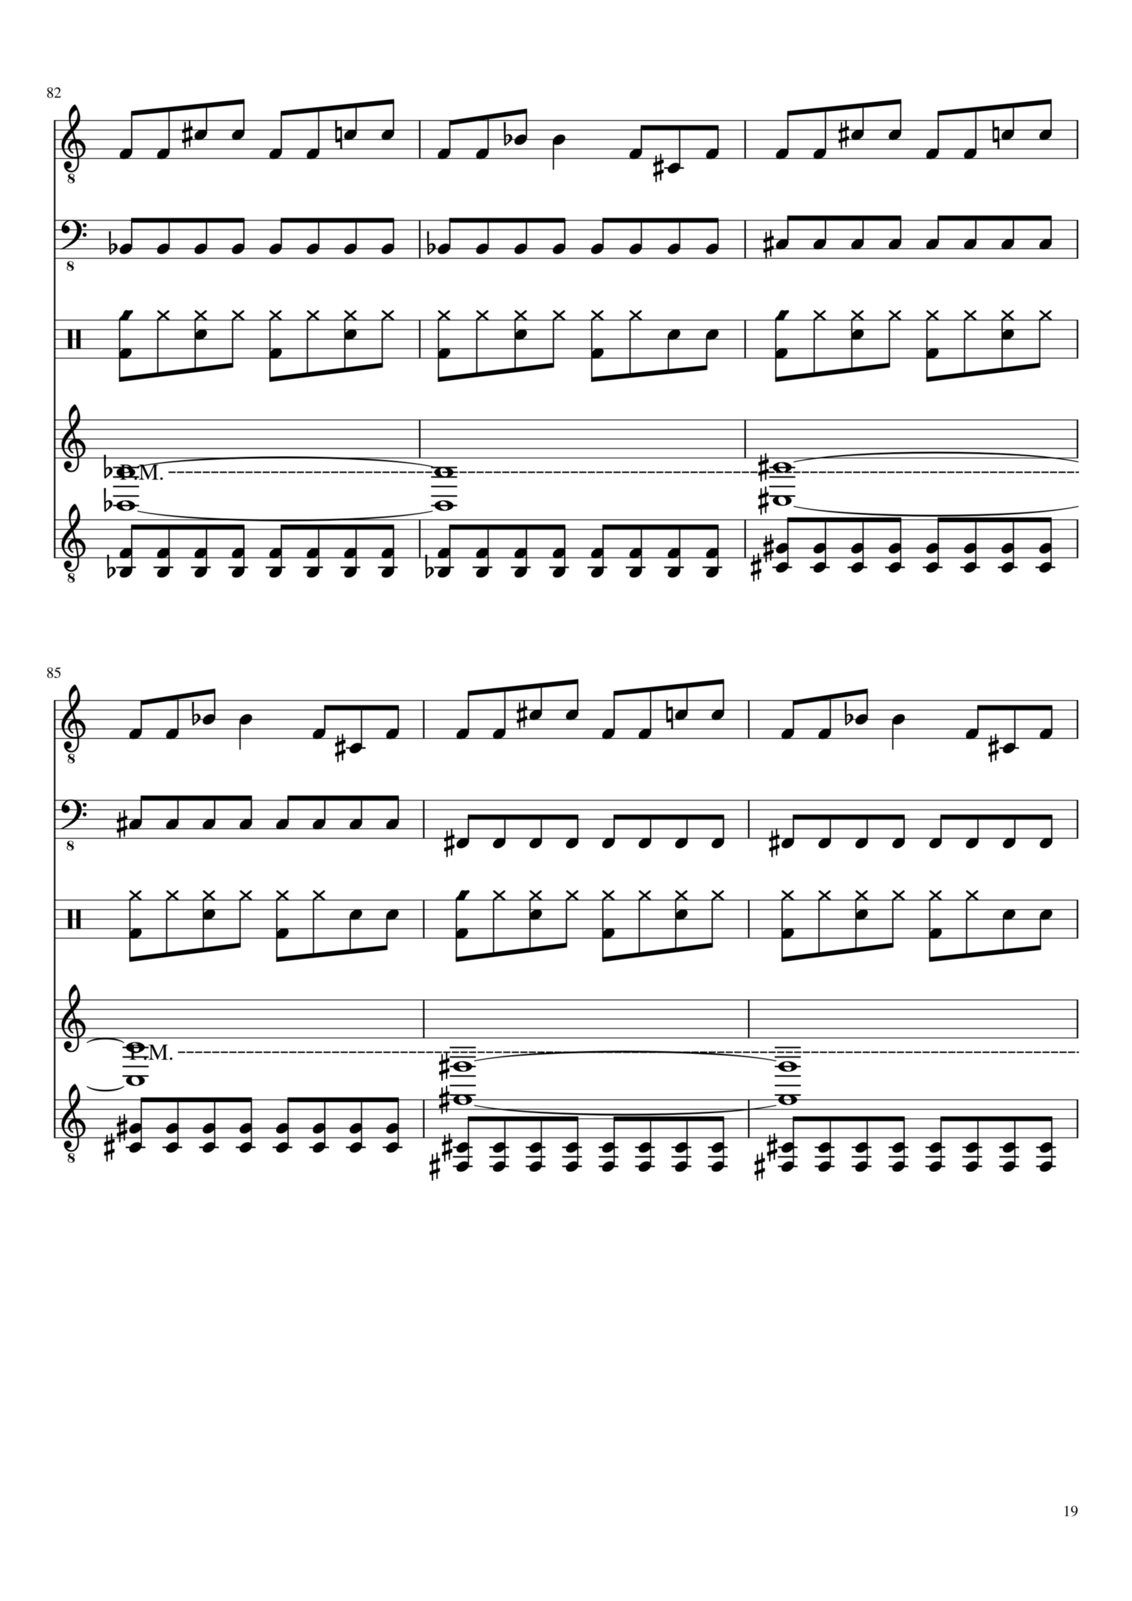 Vechnaya prizrachnaya vstrechnaya slide, Image 19